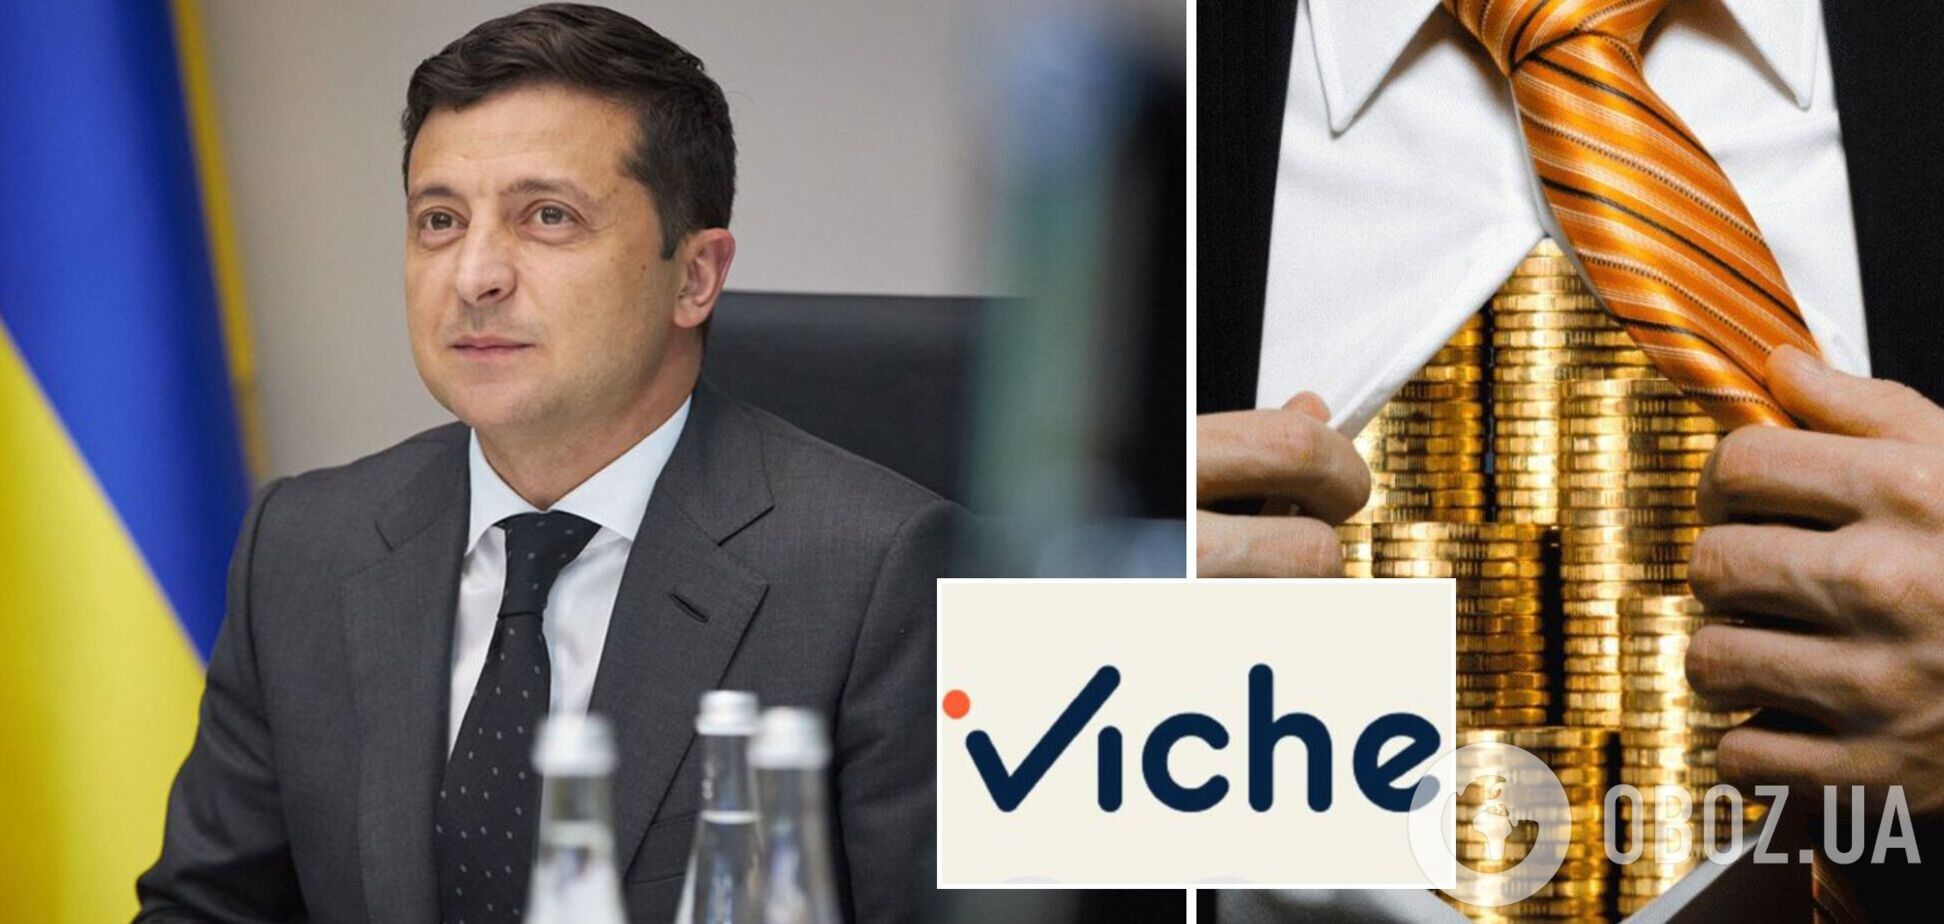 iViche начало опрос относительно предложения Зеленского разработать закон об олигархах в Украине